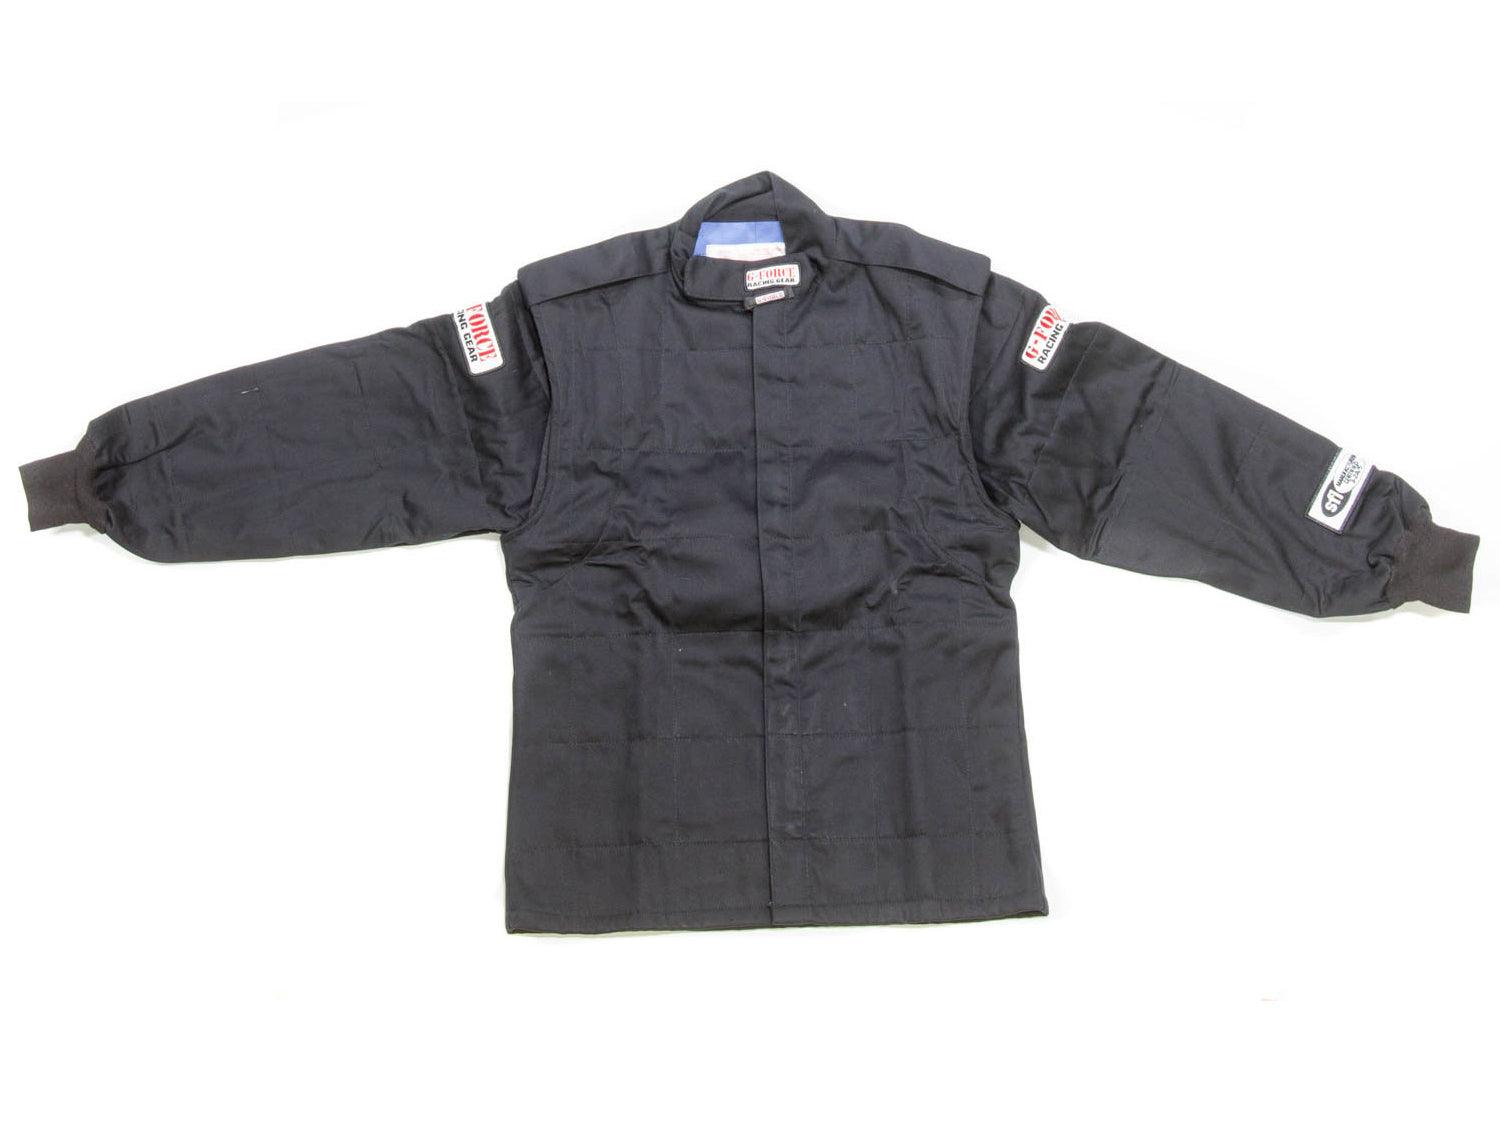 GF525 Jacket XX-Large Black - Burlile Performance Products